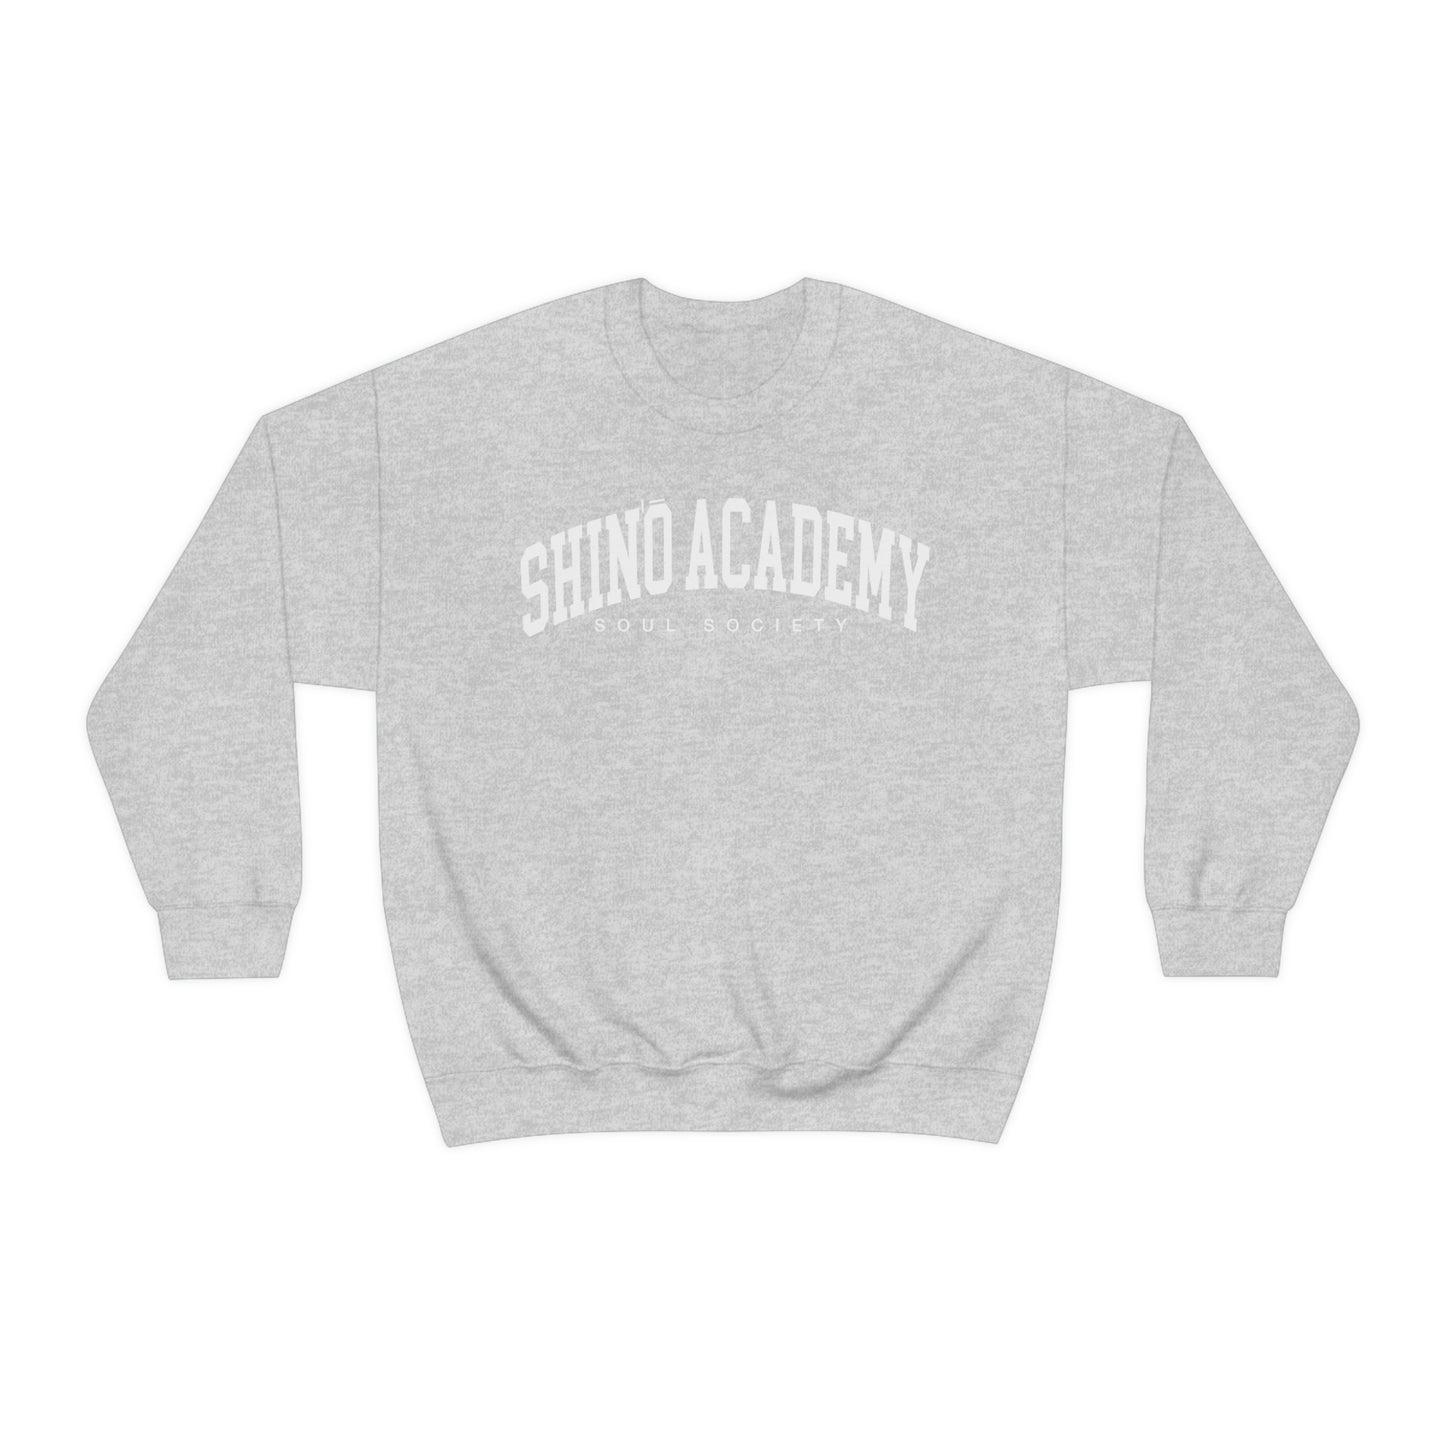 Shino academy sweatshirt crew neck Soul